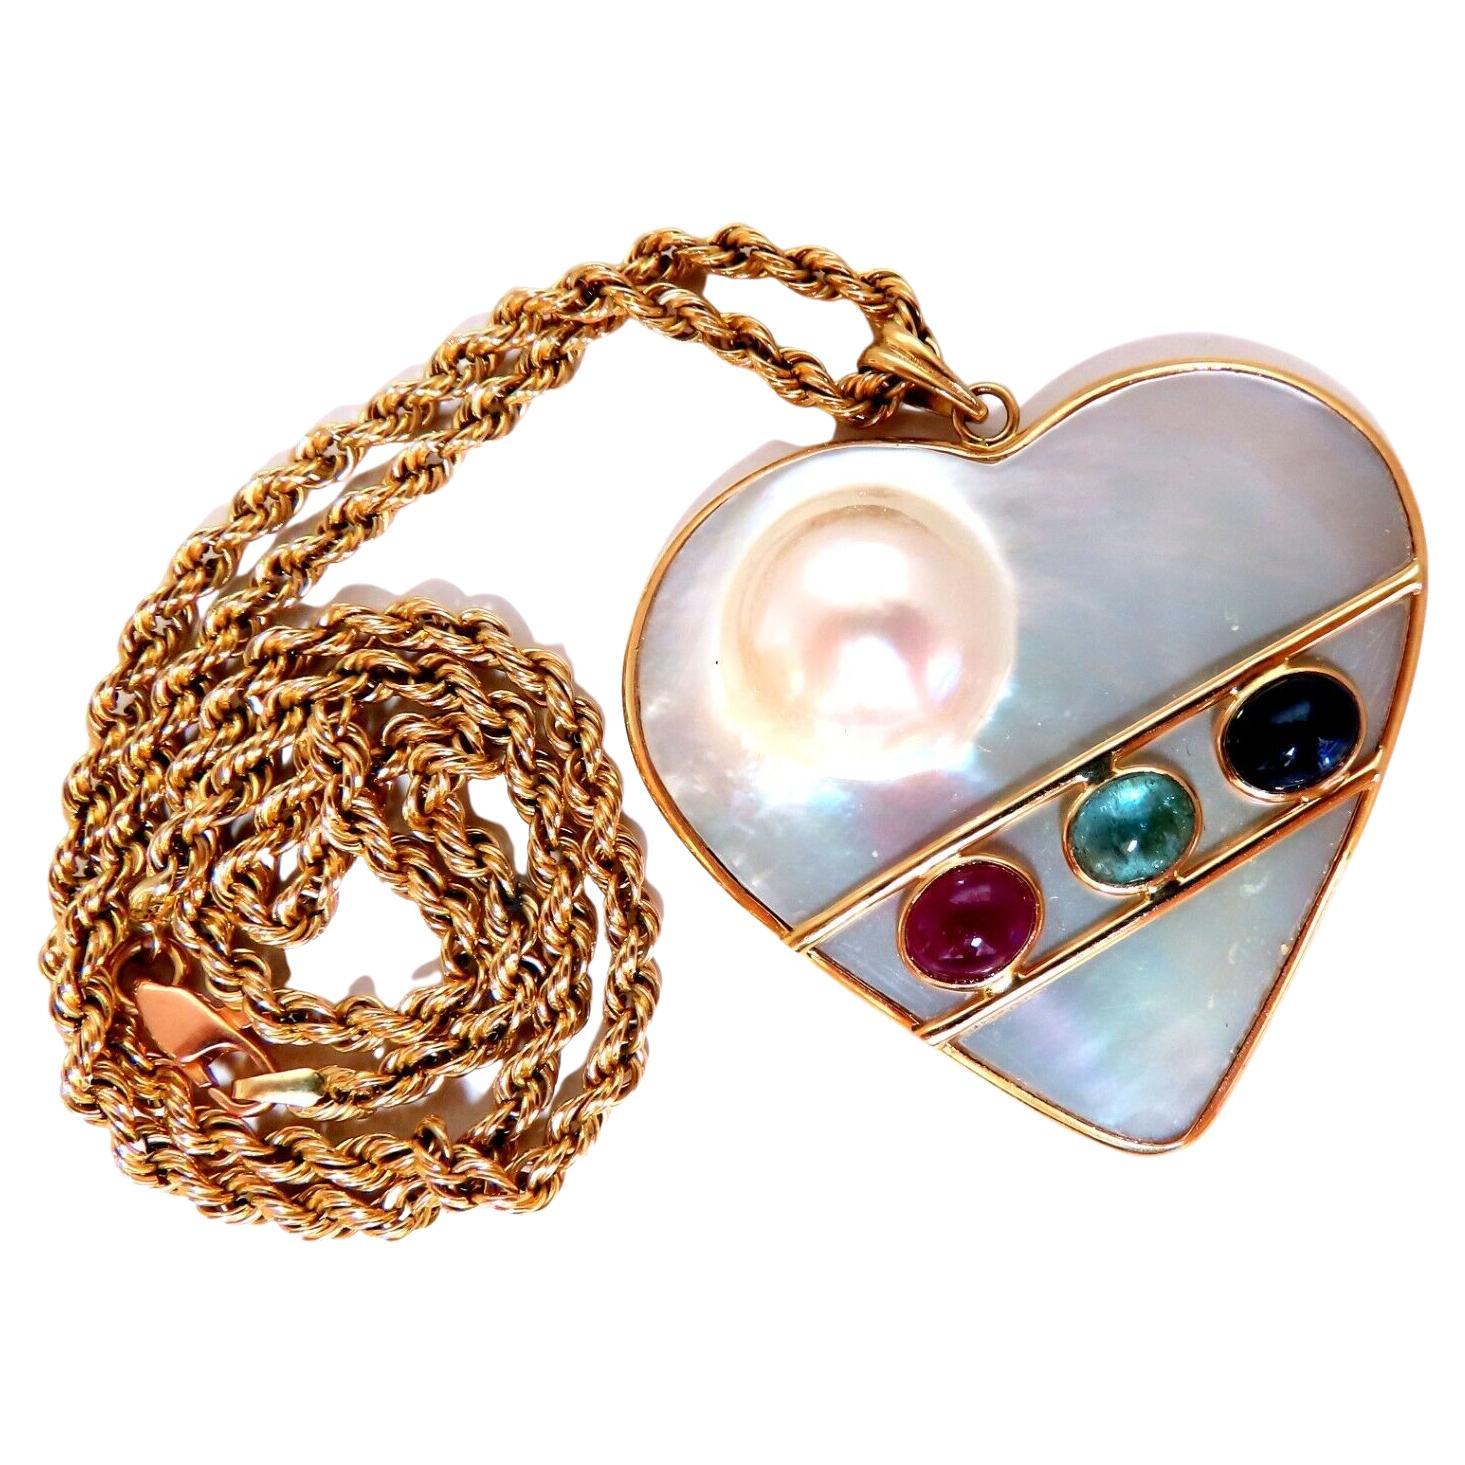 Collier en forme de cœur en perle Mabe Blister, chaîne en forme de corde avec émeraude, rubis et saphir de 14 carats